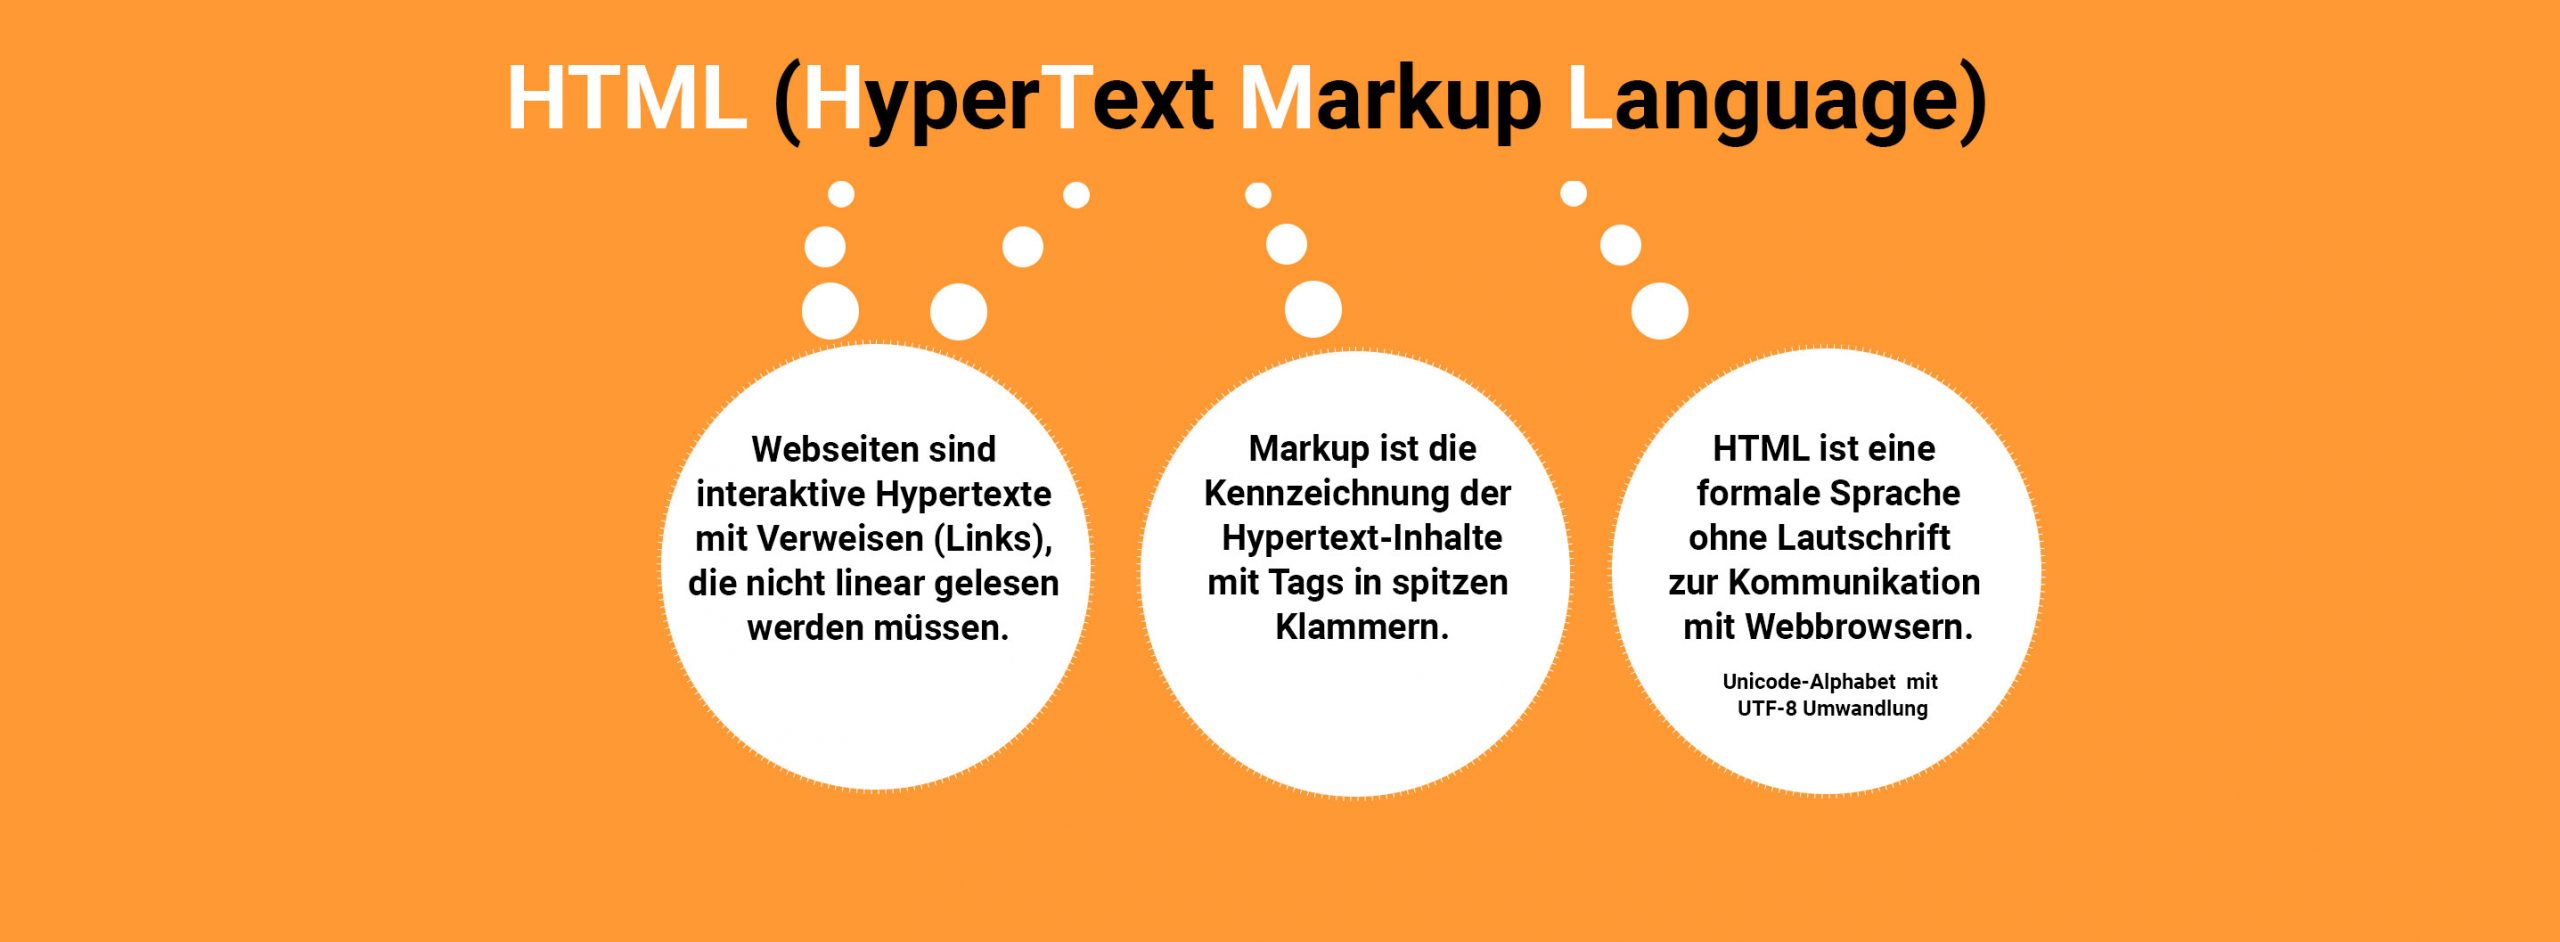 HTML ist die Abkürzung für Hypertext Markup Language (de: Hypertextmarkierungssprache)